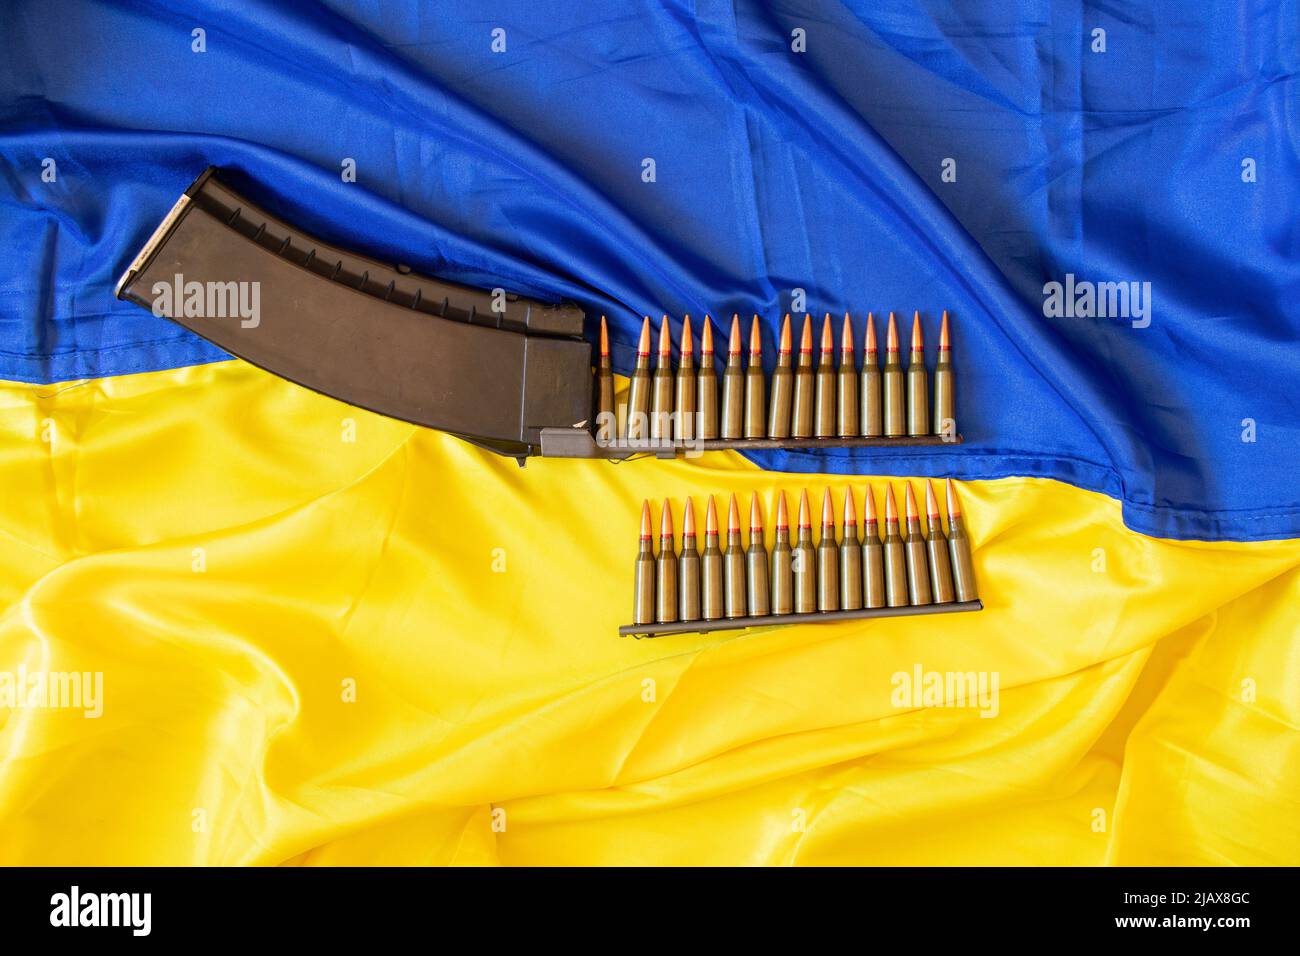 Les balles dans la corne se trouvent sur le drapeau jaune-bleu de l'Ukraine, la guerre en Ukraine, la défense de la mère patrie, les armes, la balle 2022 Banque D'Images